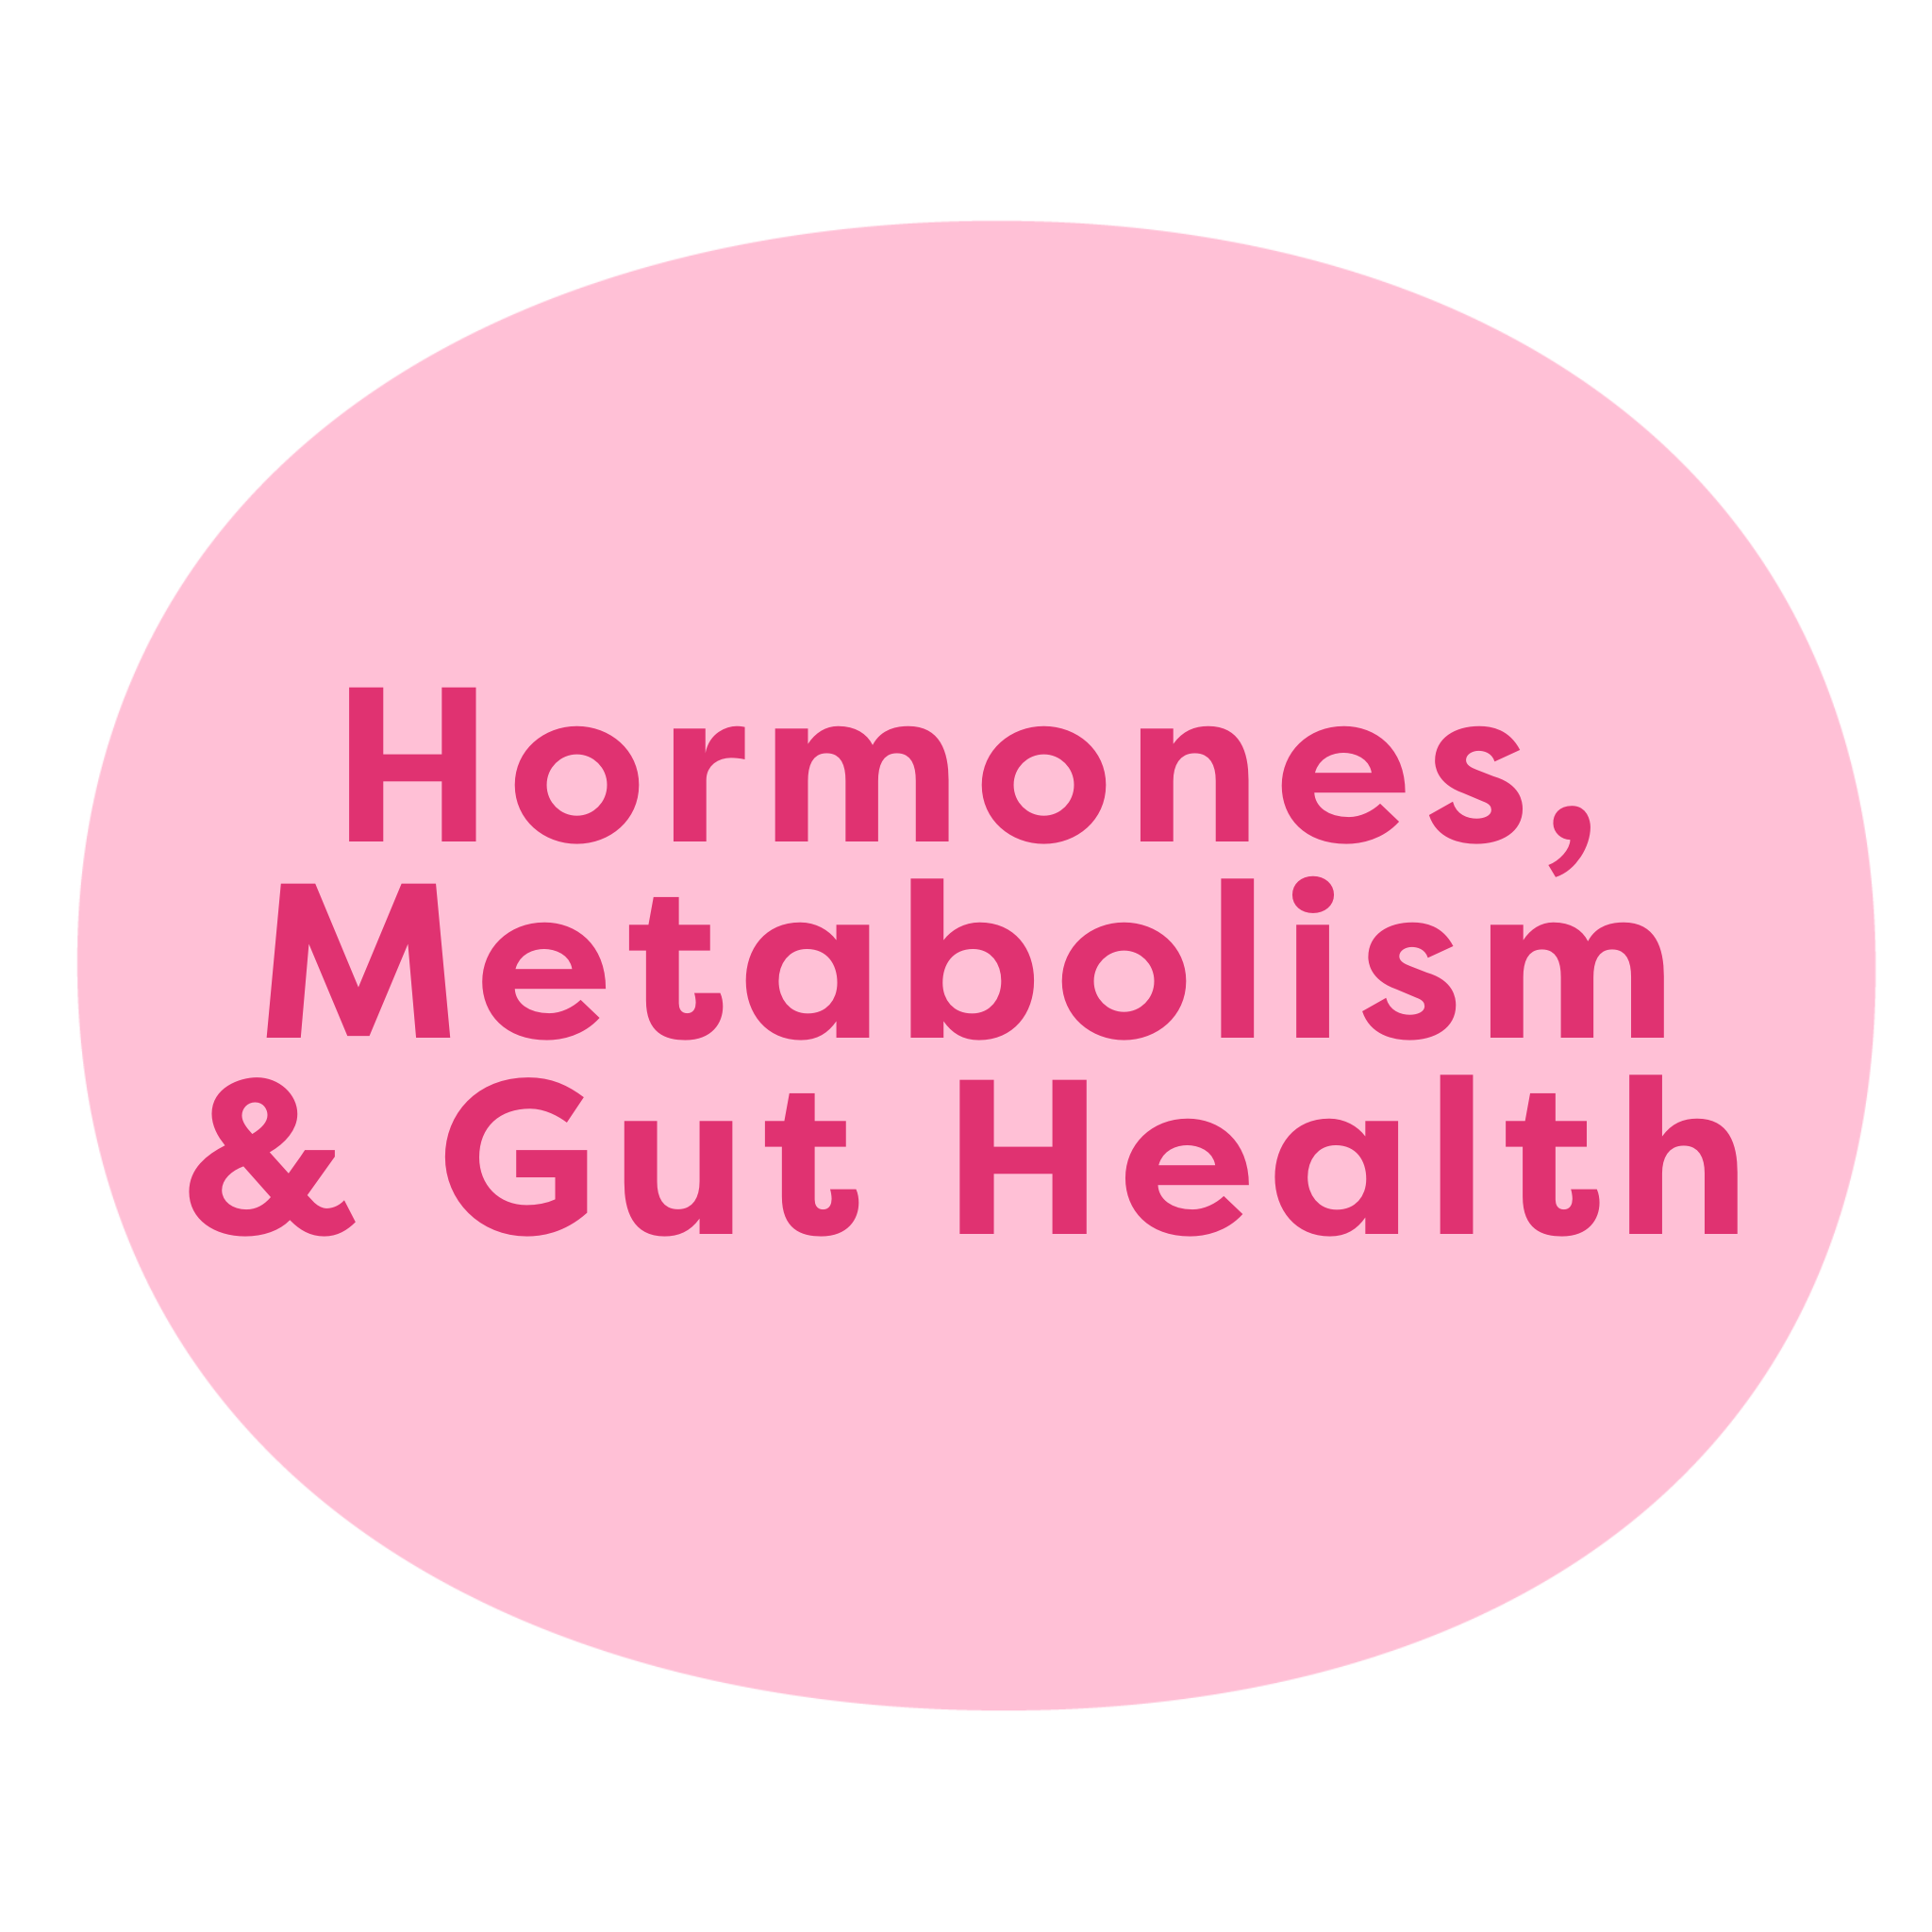 Hormones, Metabolism & Gut Health